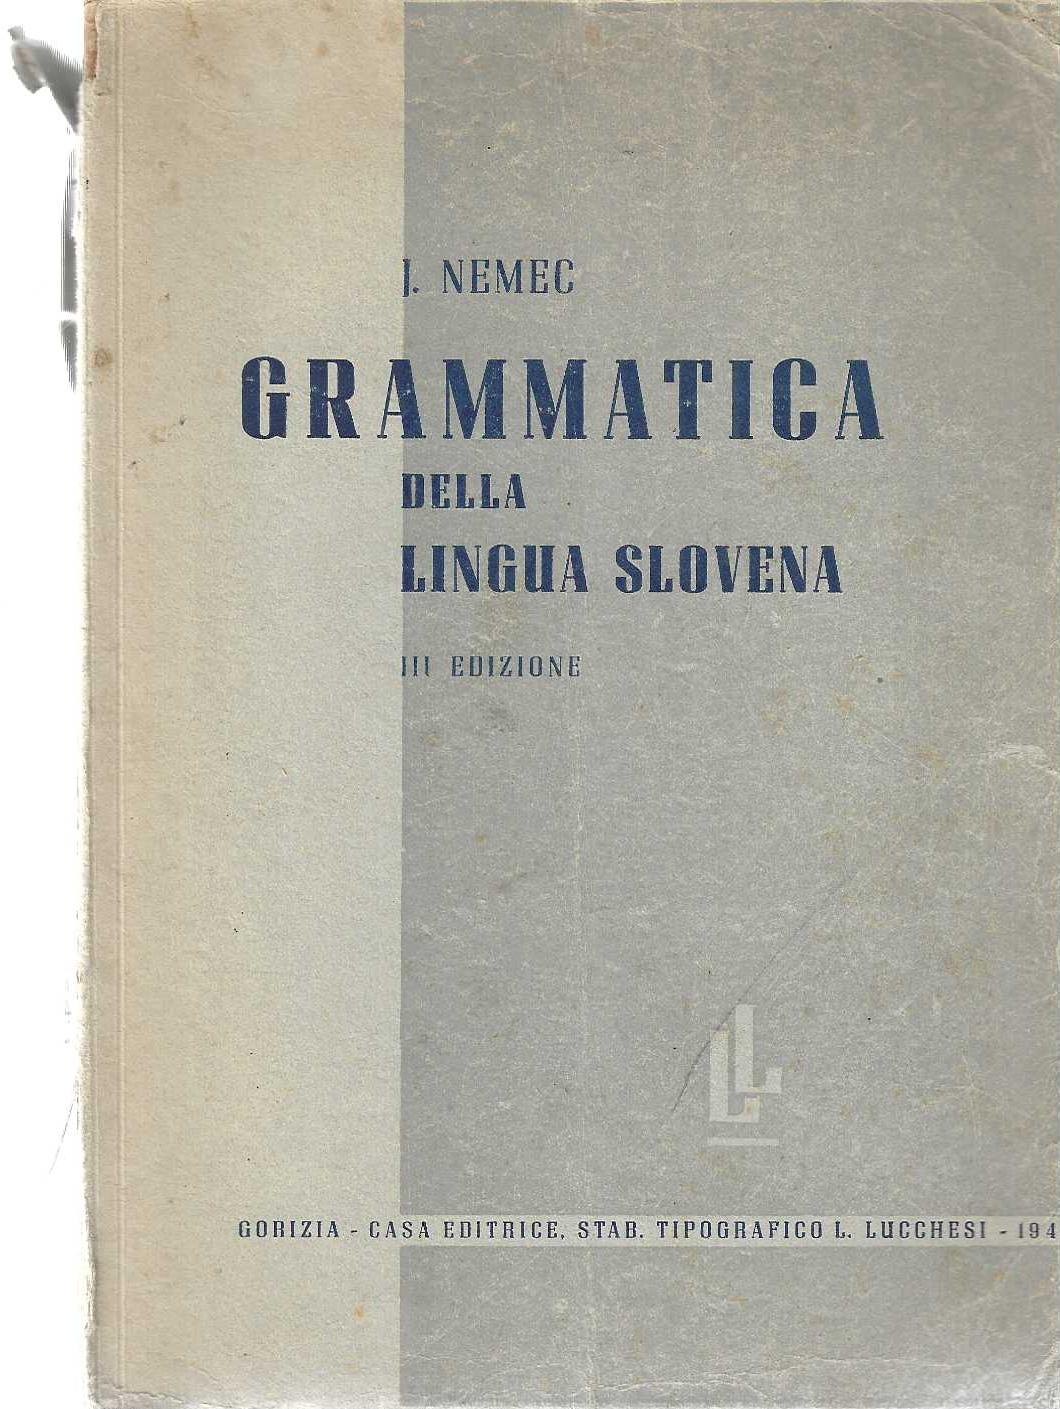 "Grammatica della lingua slovena"